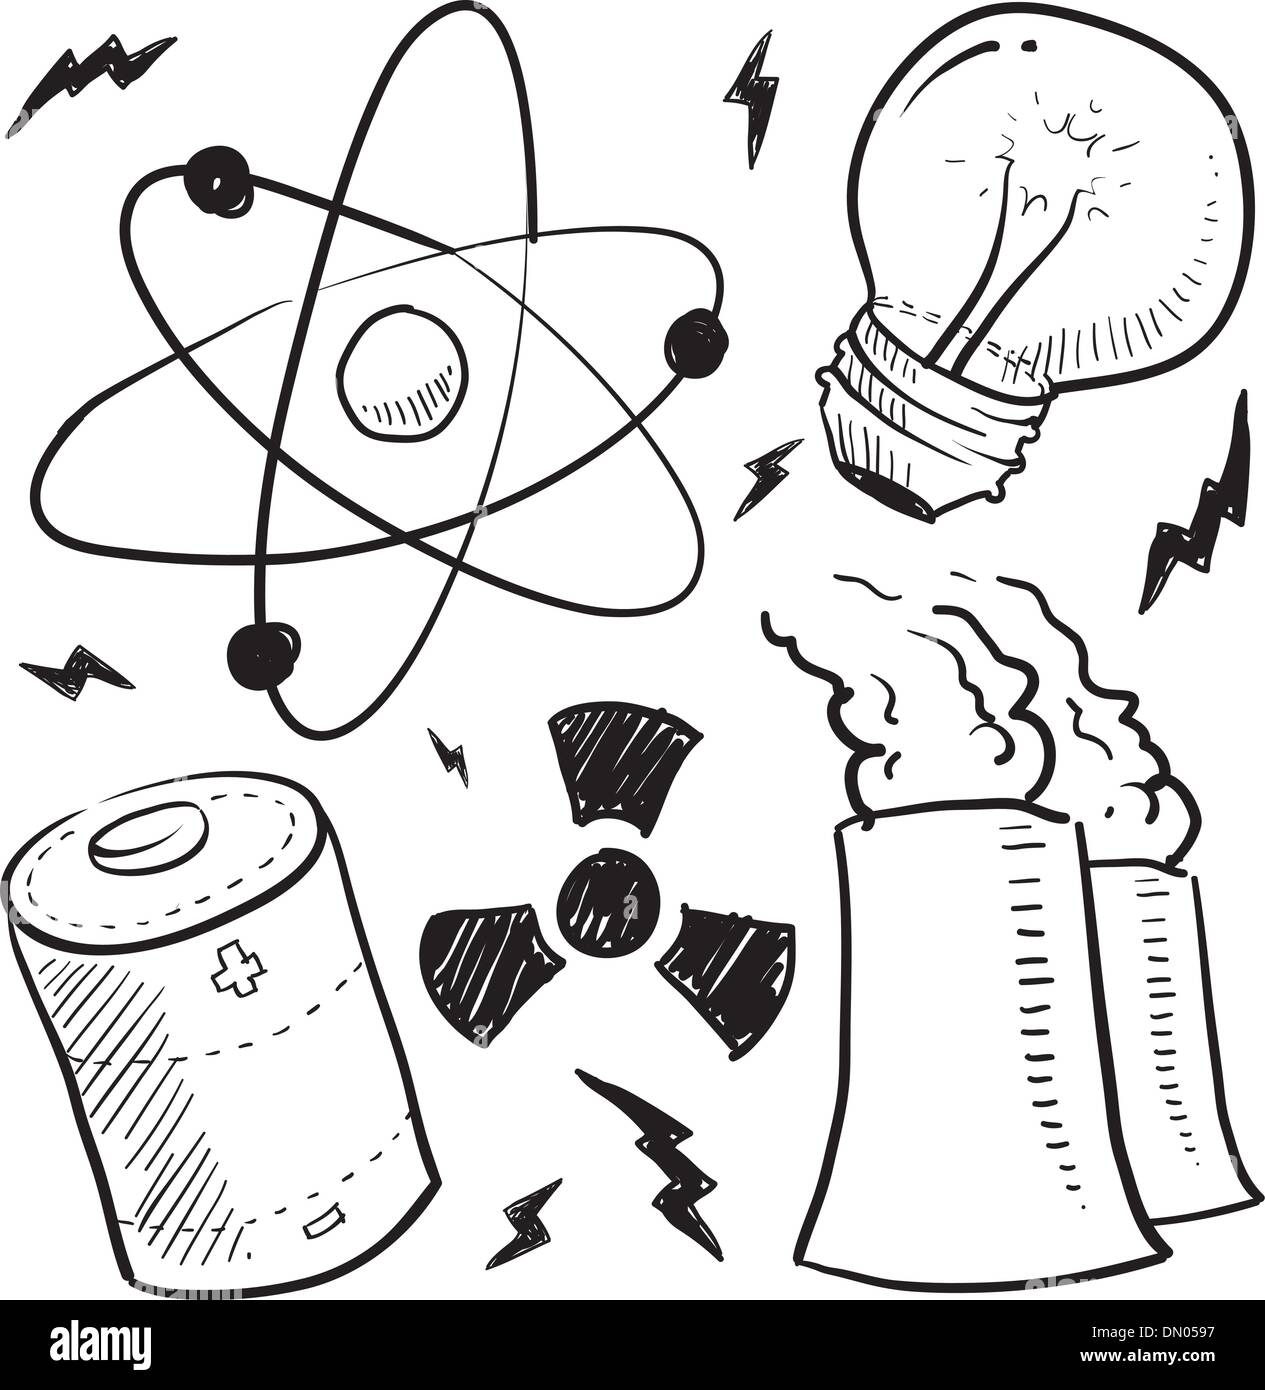 Croquis d'objets d'énergie nucléaire Illustration de Vecteur